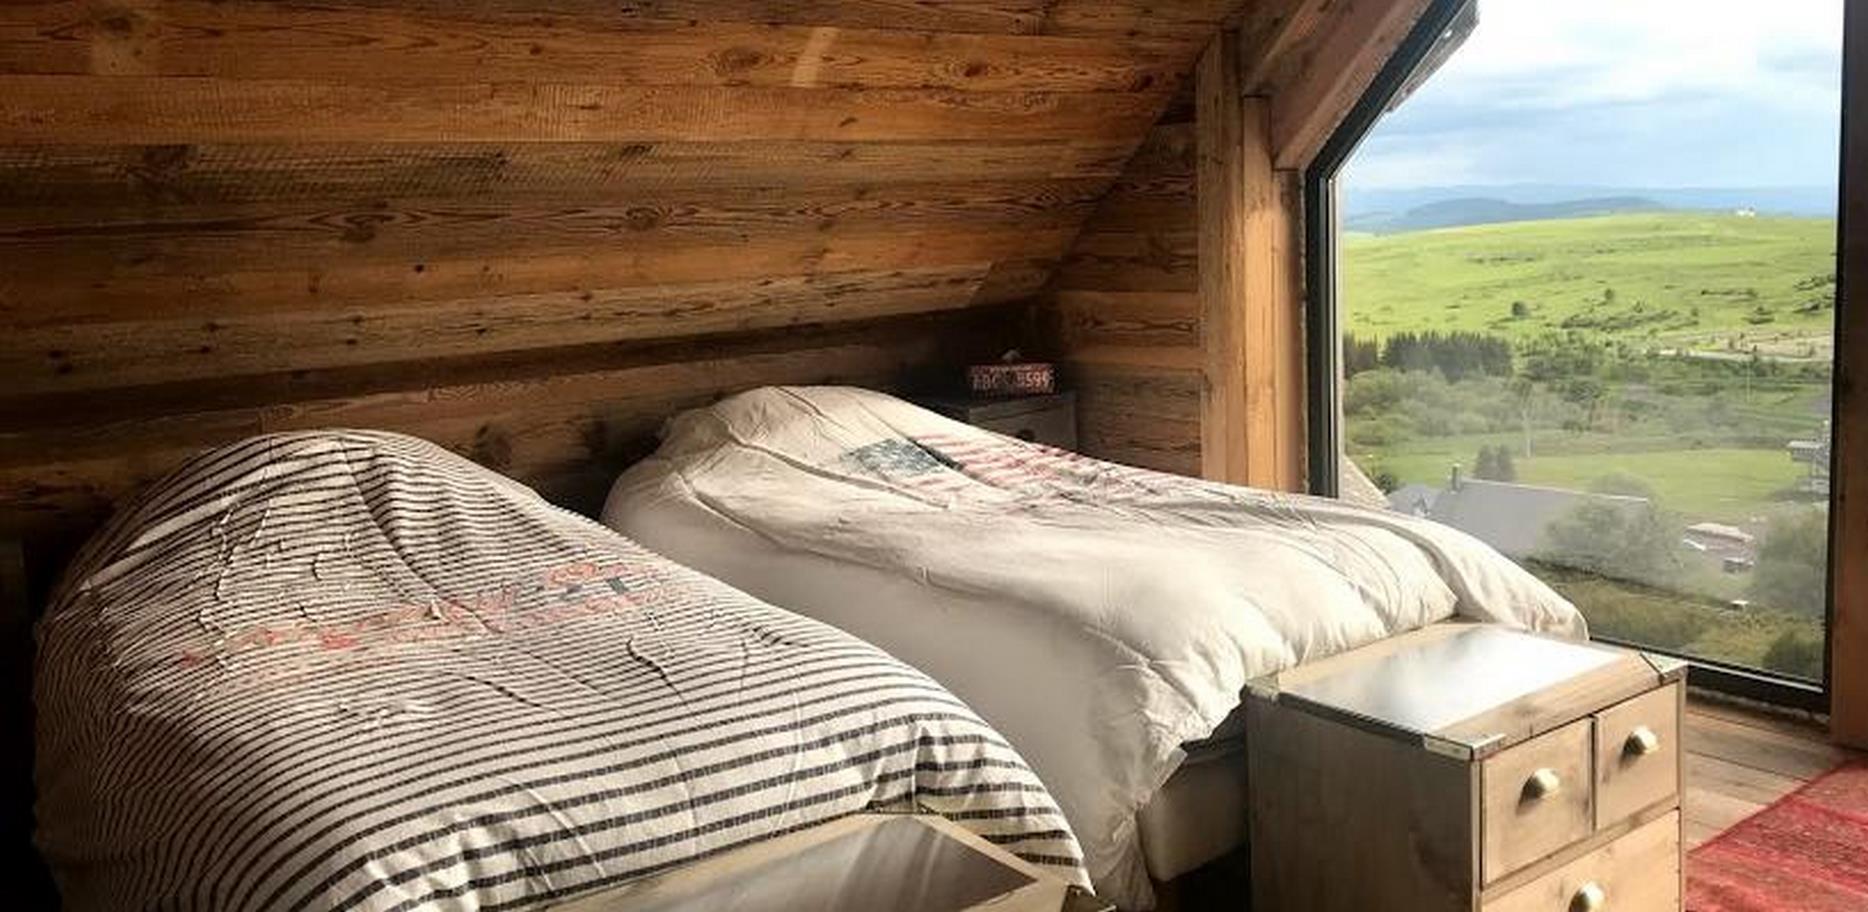 Chalet Super Besse - quadruple bedroom and old wood decoration